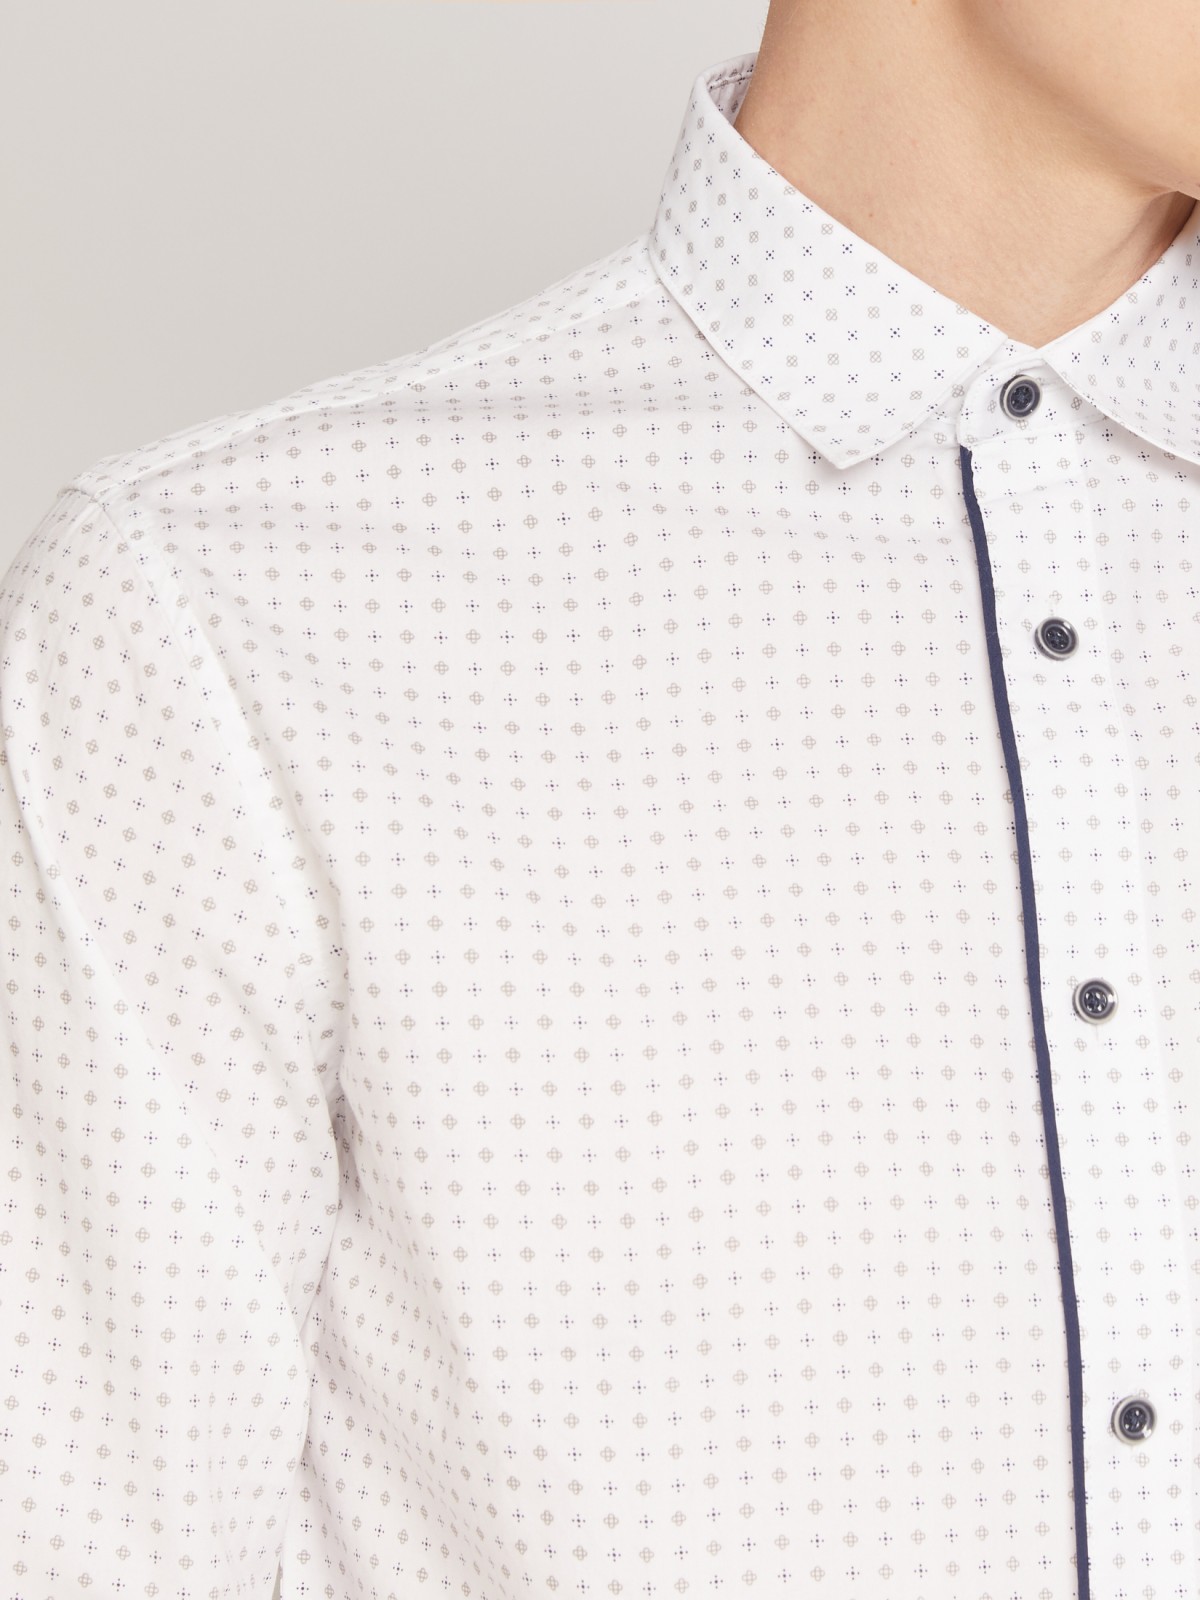 Хлопковая рубашка с микро орнаментом zolla 011322106023, цвет белый, размер S - фото 6